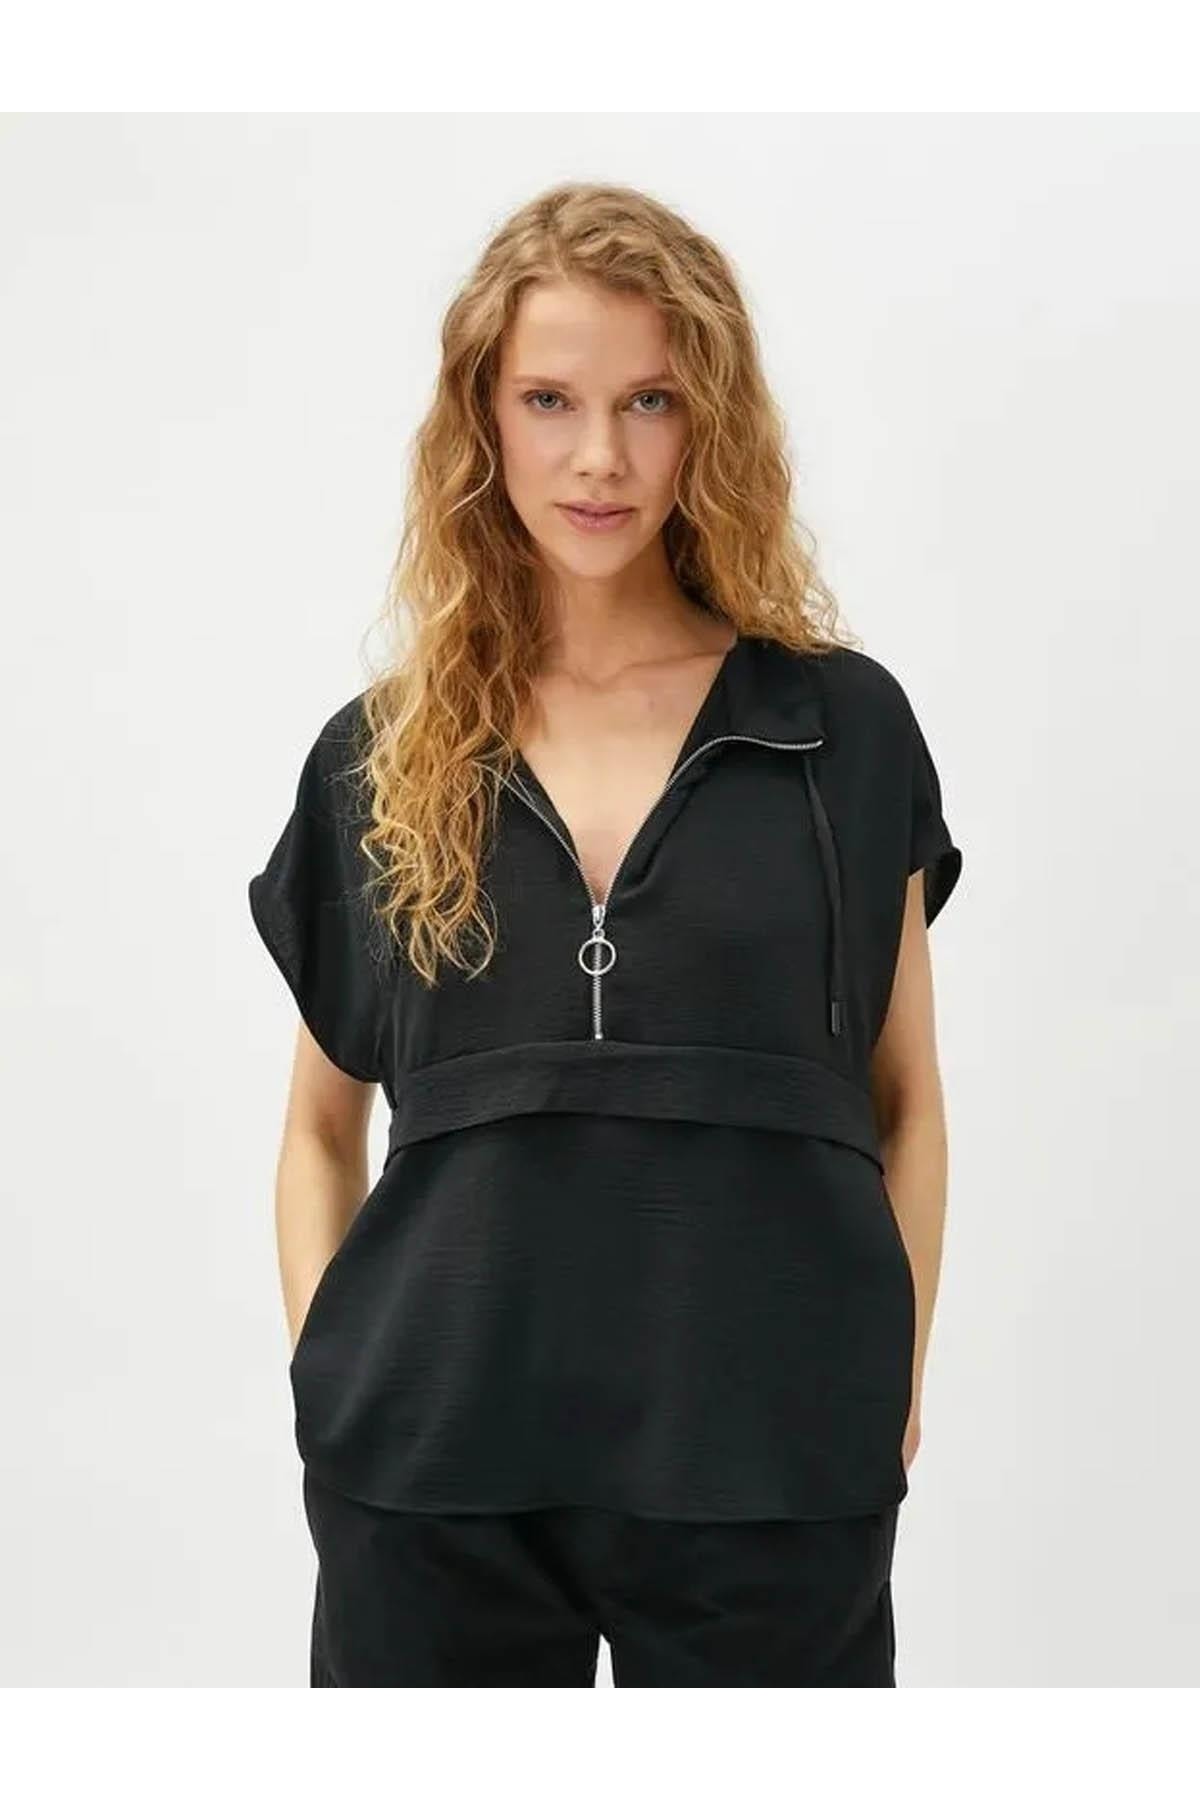 цена Женская блузка черная Koton, черный